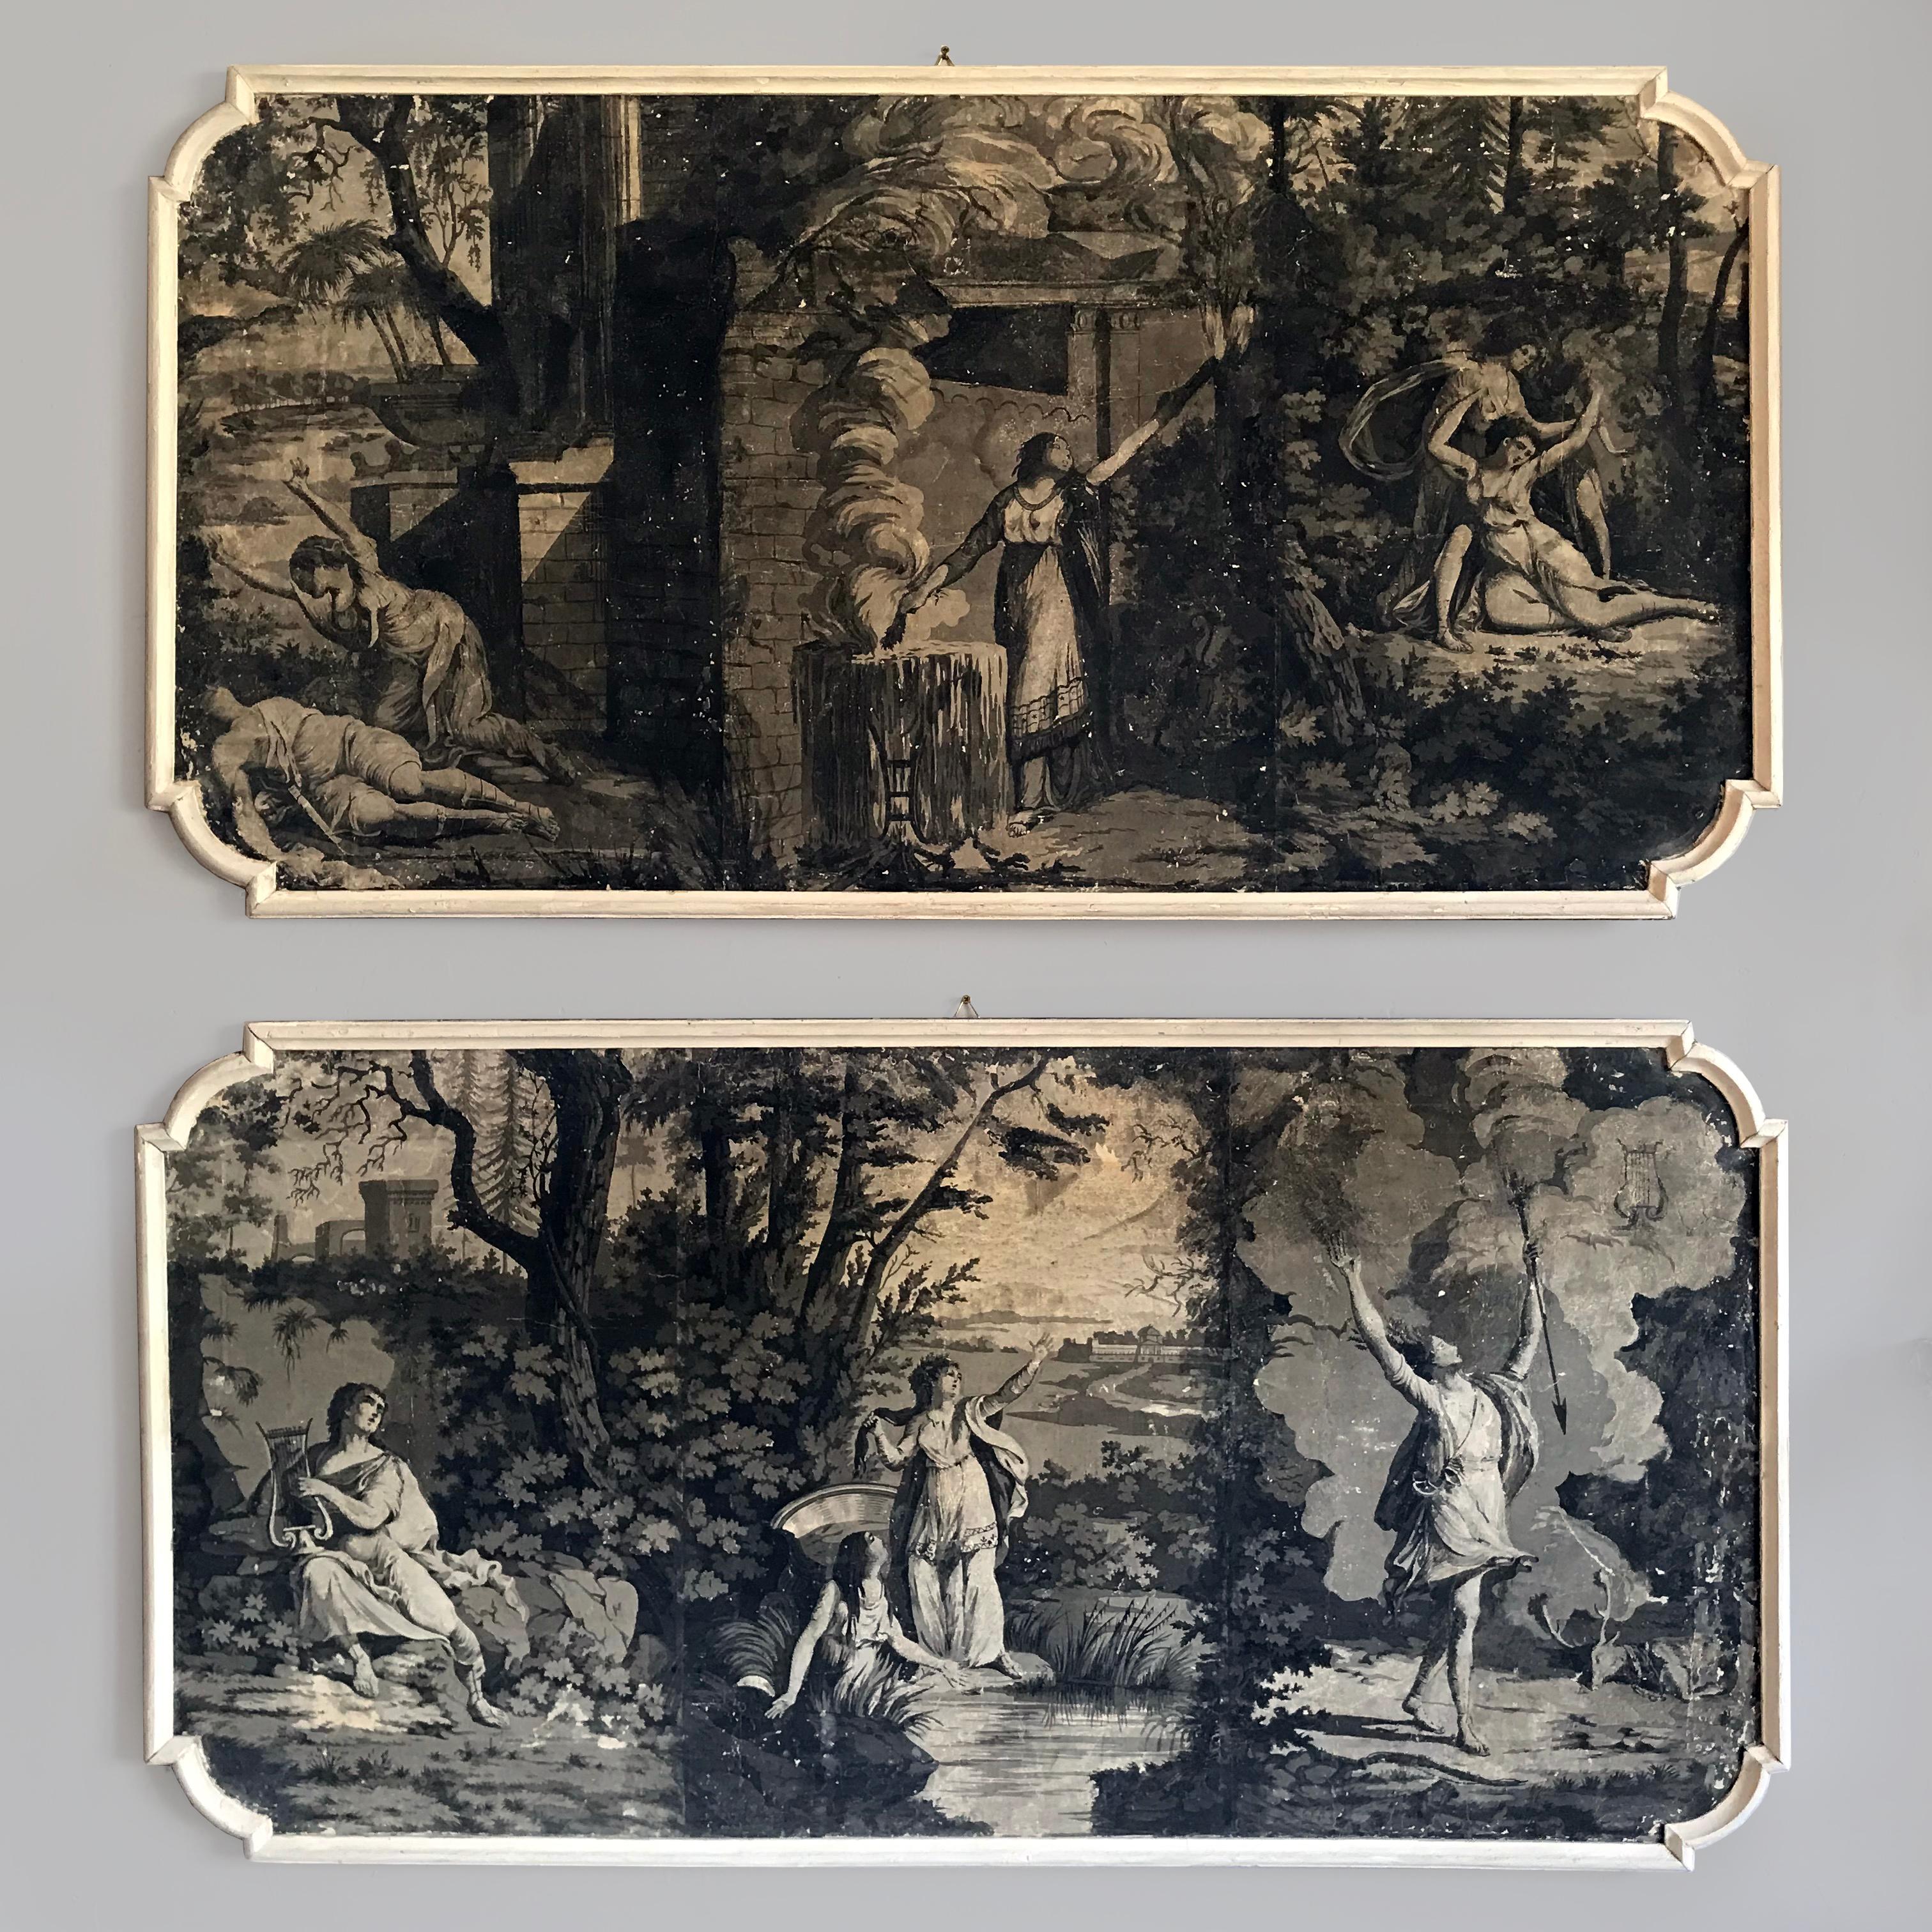 Ein wunderschönes, seltenes Paar handgemalter französischer Grisaille-Tafeln aus dem frühen 19. Jahrhundert nach Dufour-Leroy um 1820.